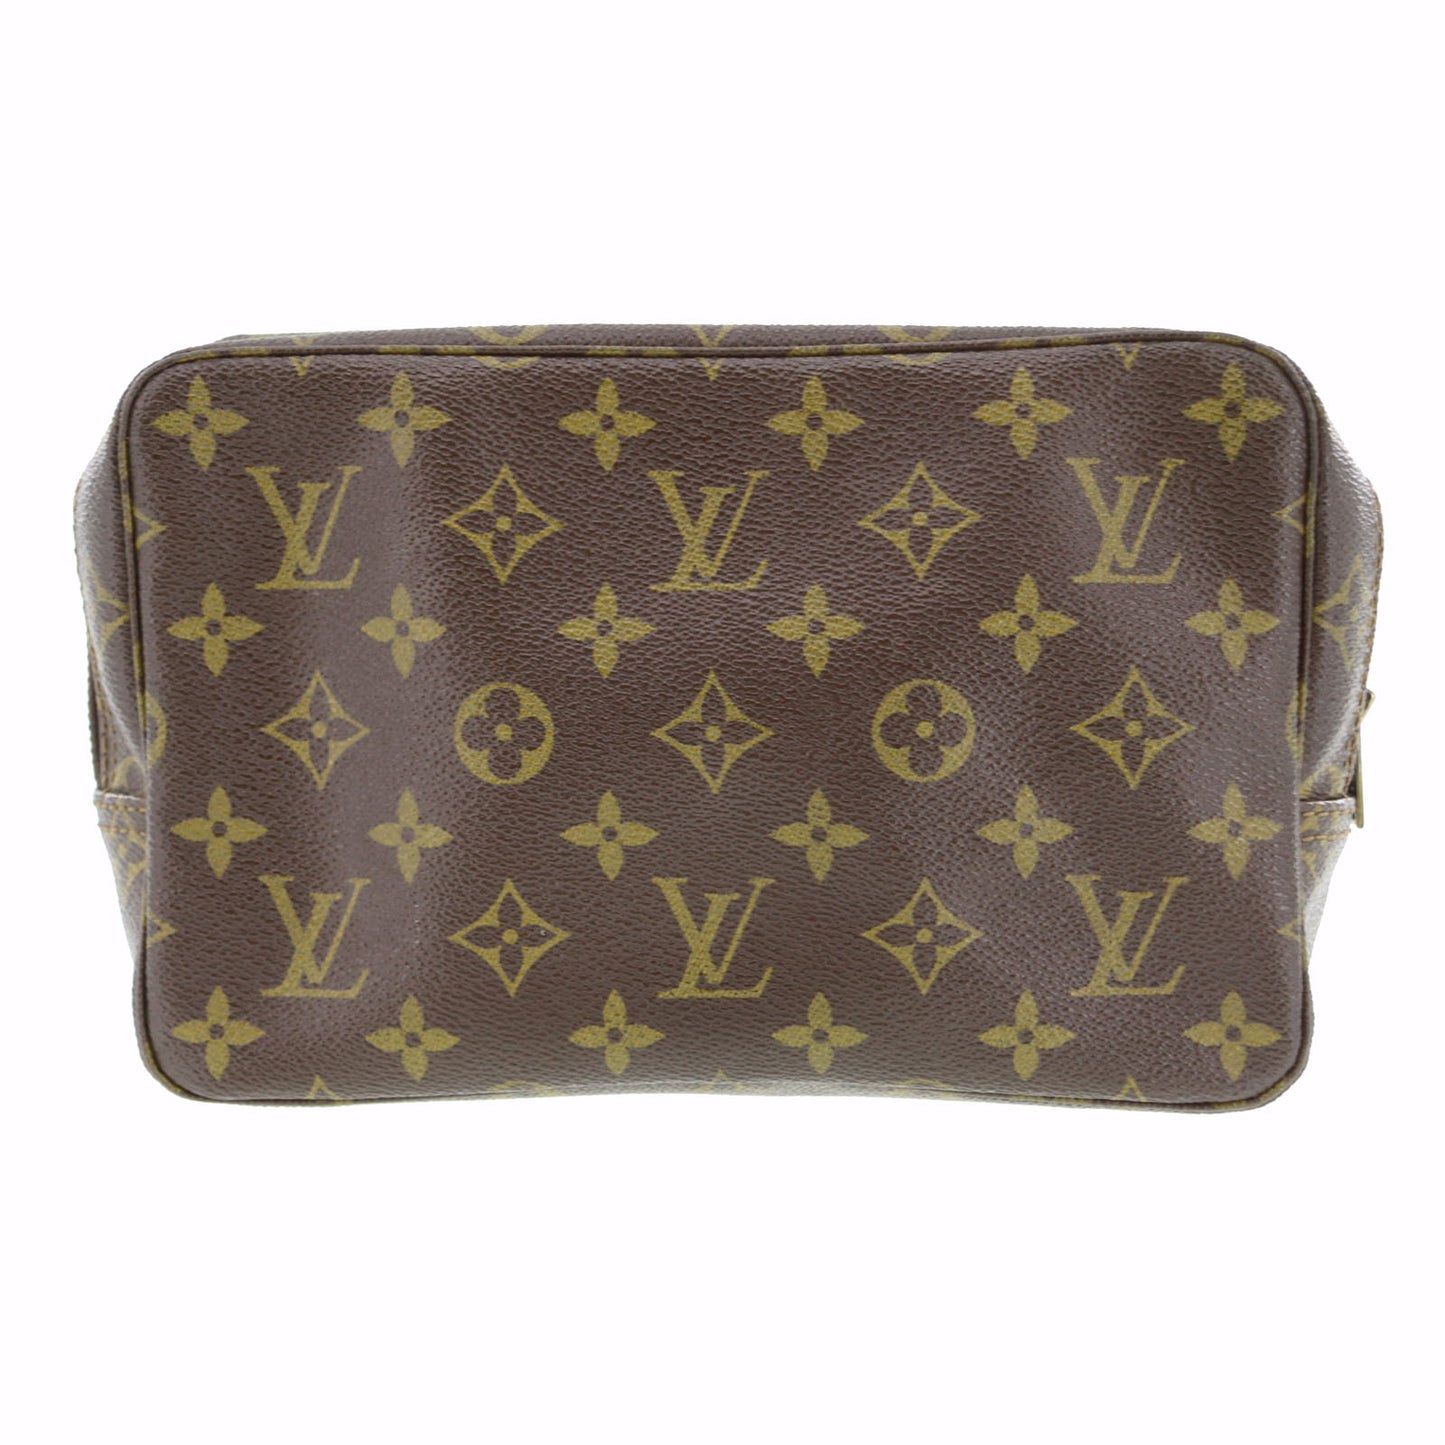 Pre-Loved Louis Vuitton Monogram Trousse Toilette 23 Clutch Bag M47524 Lv